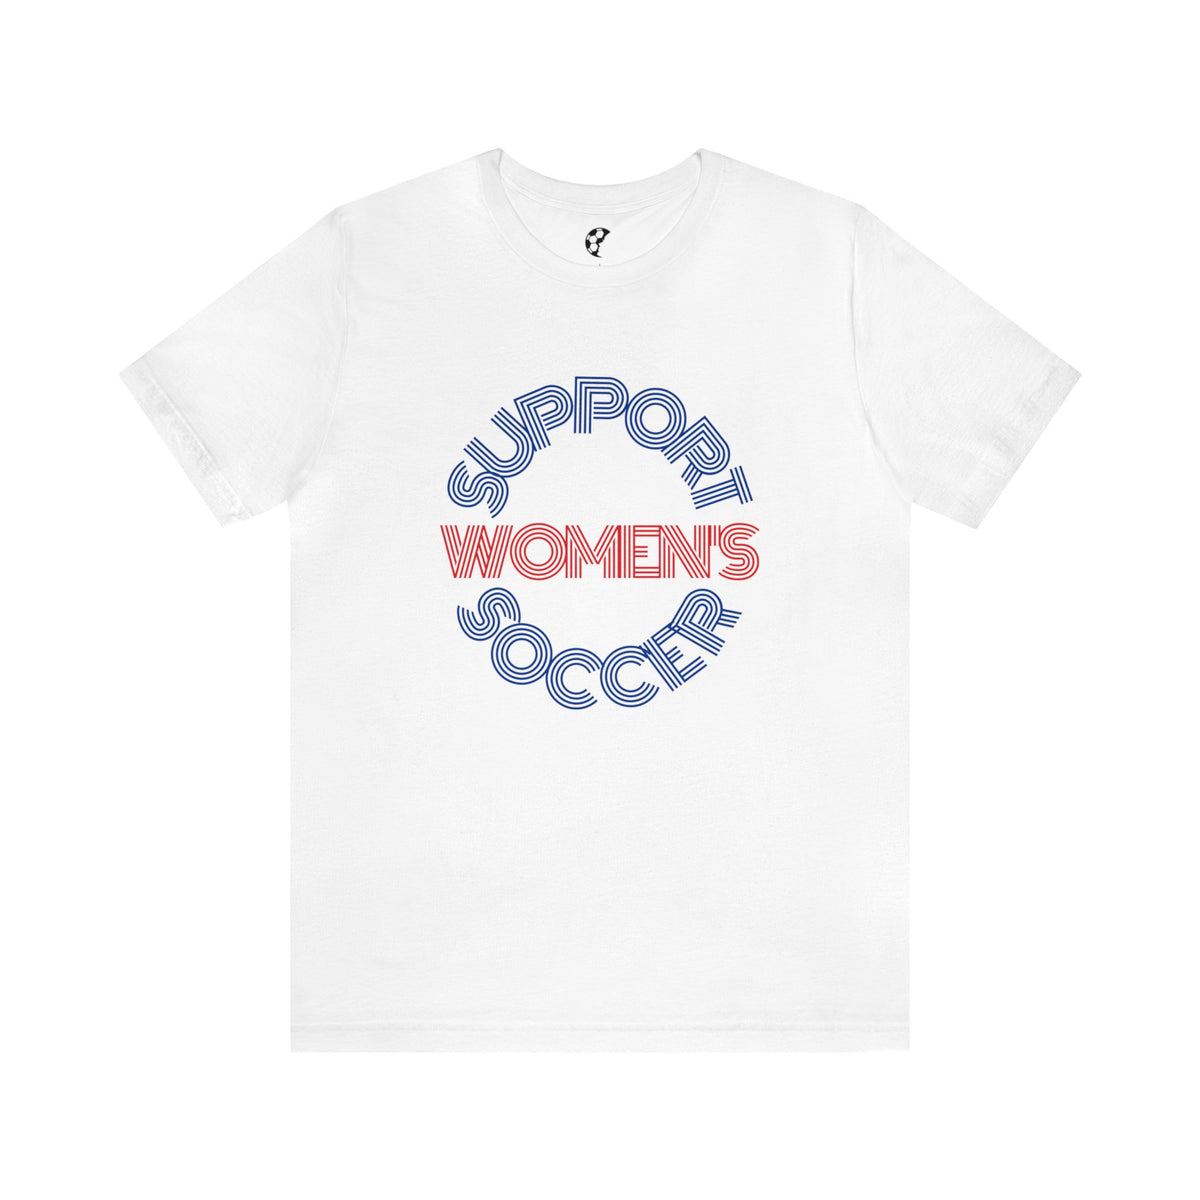 Support Women's Soccer Adult T-Shirt